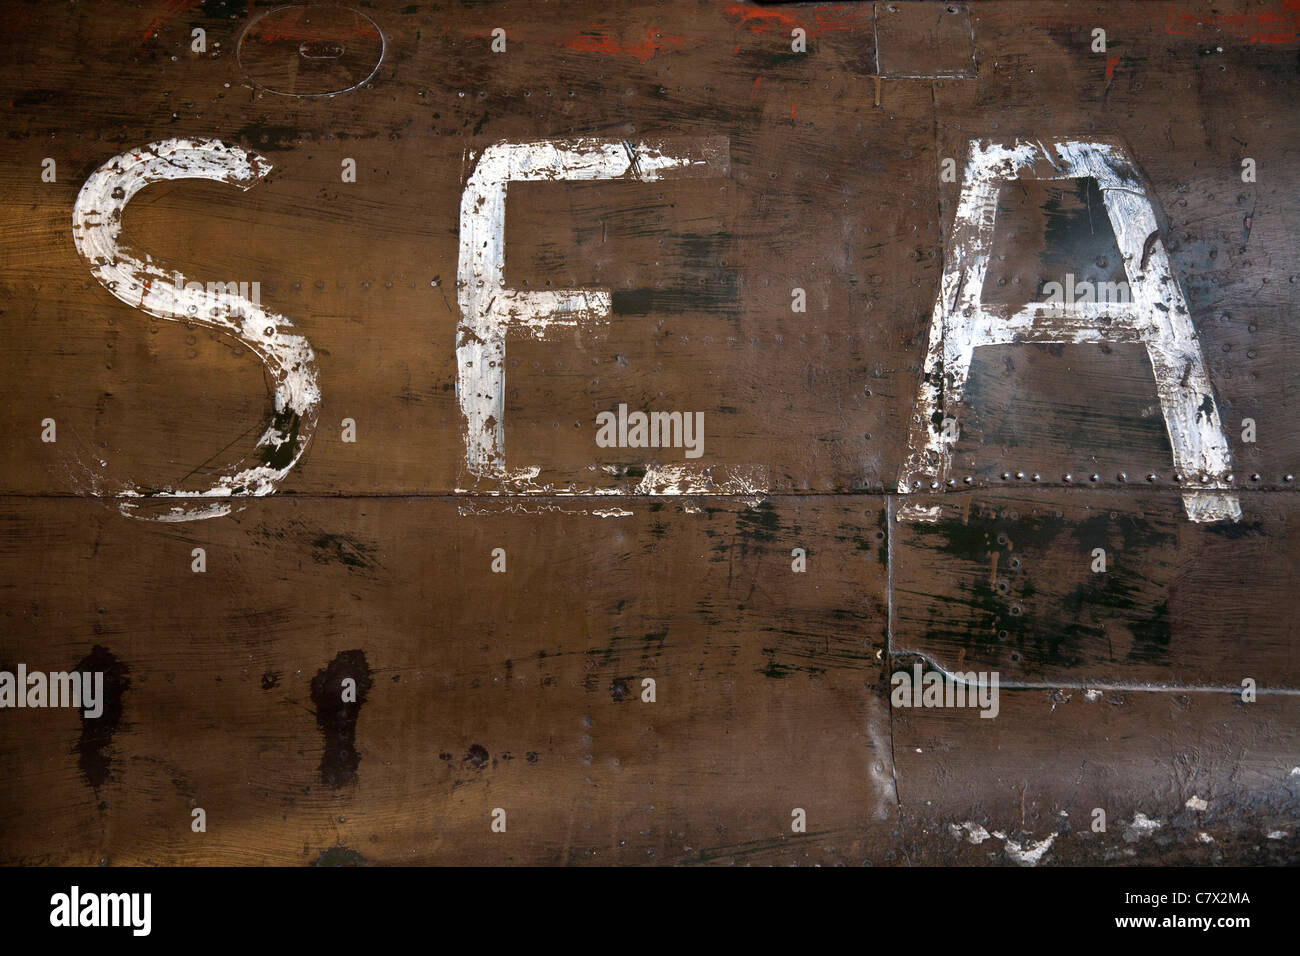 Weiße Buchstaben S E A malte auf der Seite einer Mitsubishi A6M Zero WW2 Flugzeugrumpf in das Imperial War Museum, London. Stockfoto